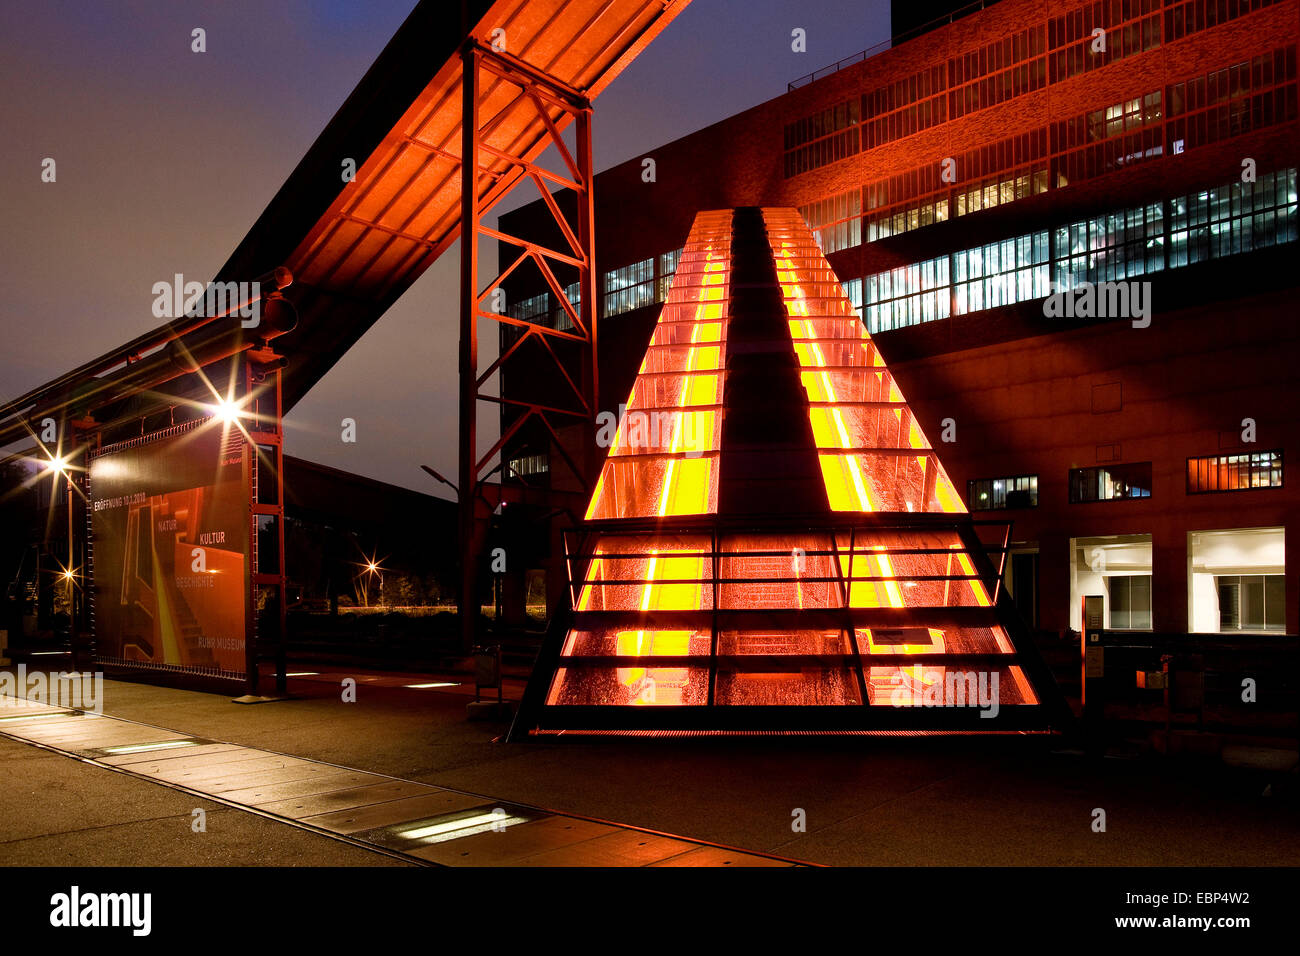 Passerella illuminata al centro visitatori del Complesso industriale delle Miniere di carbone dello Zollverein, in Germania, in Renania settentrionale-Vestfalia, la zona della Ruhr, Essen Foto Stock